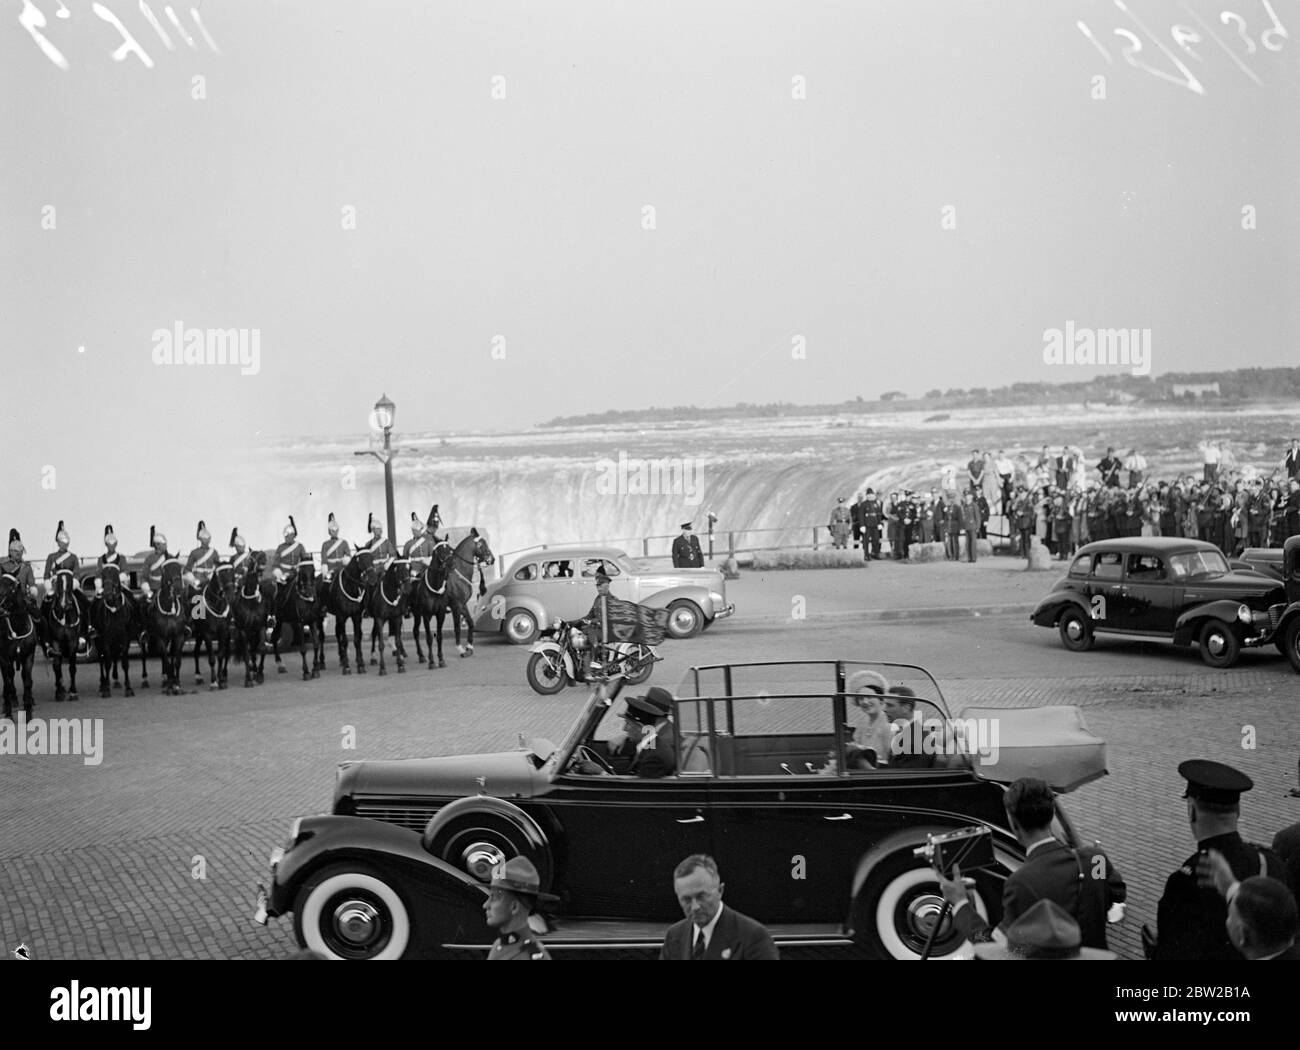 Der königliche Besuch in Kanada. Der König und die Königin besuchten die Niagara Fälle, Ontario, bevor sie in die Vereinigten Staaten übergingen. Foto zeigt die Szenen, als der König und die Königin die Horseshoe Falls am Table Rock besuchten. 15 Juli 1939 Stockfoto